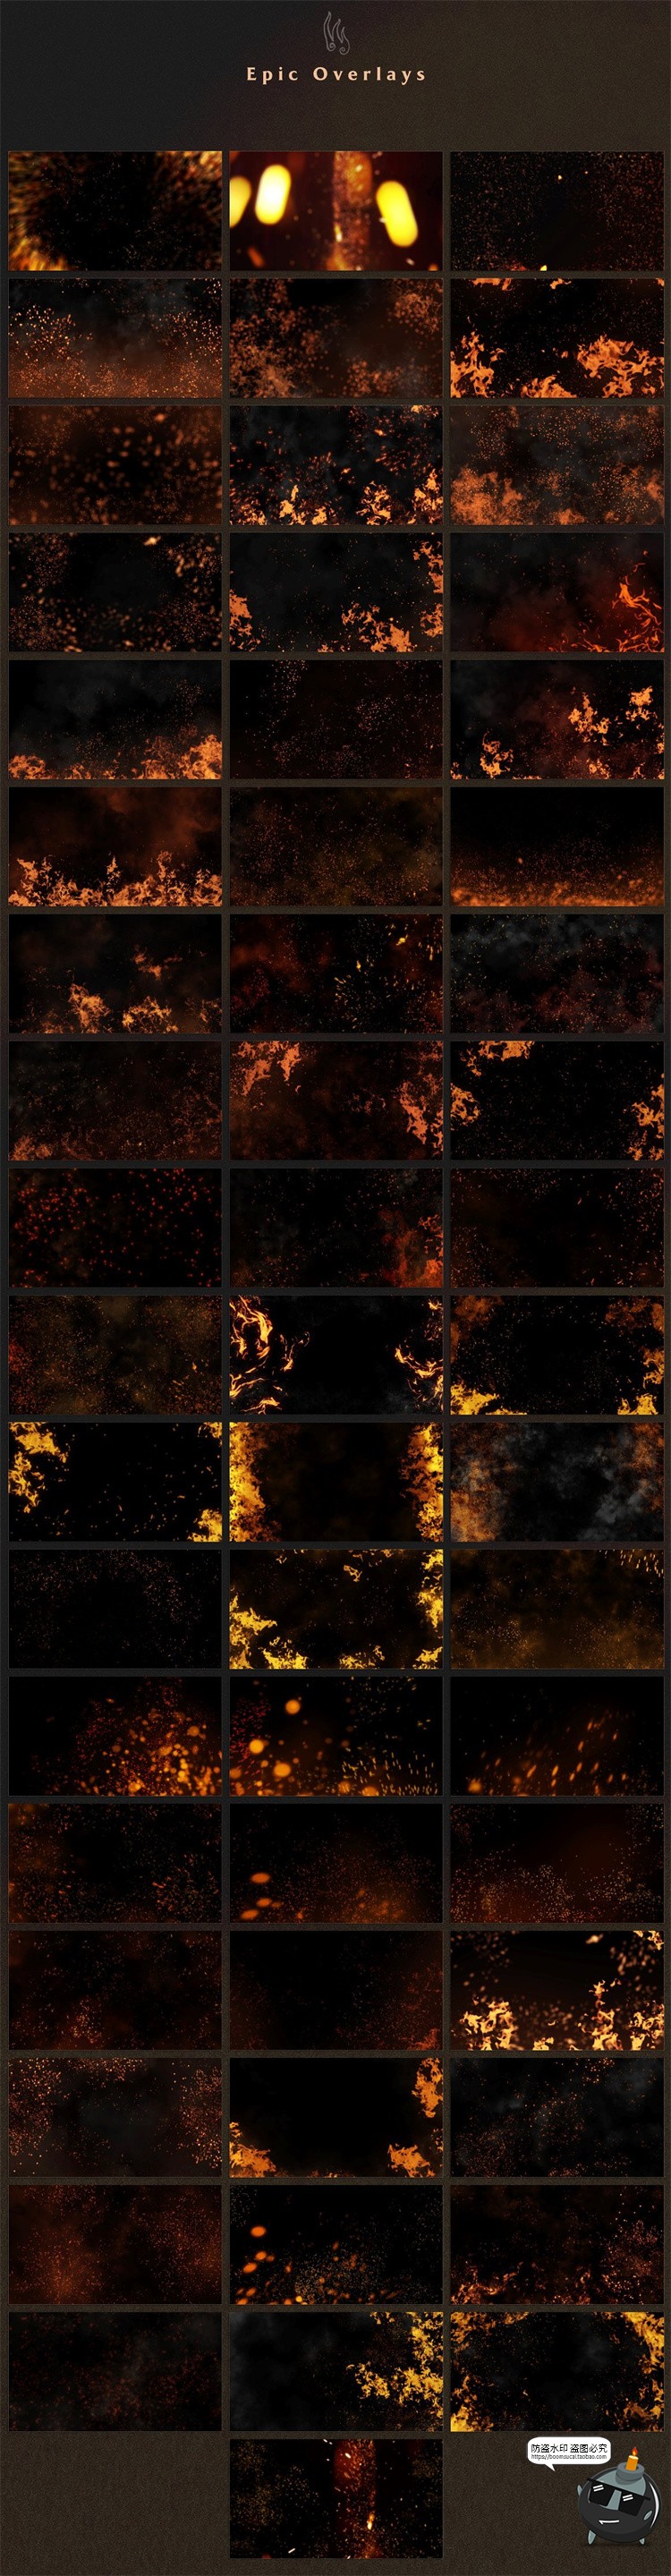 500+照片叠层合集 烟雾恐怖魔法火焰绚光特效JPG黑底图片合成素材